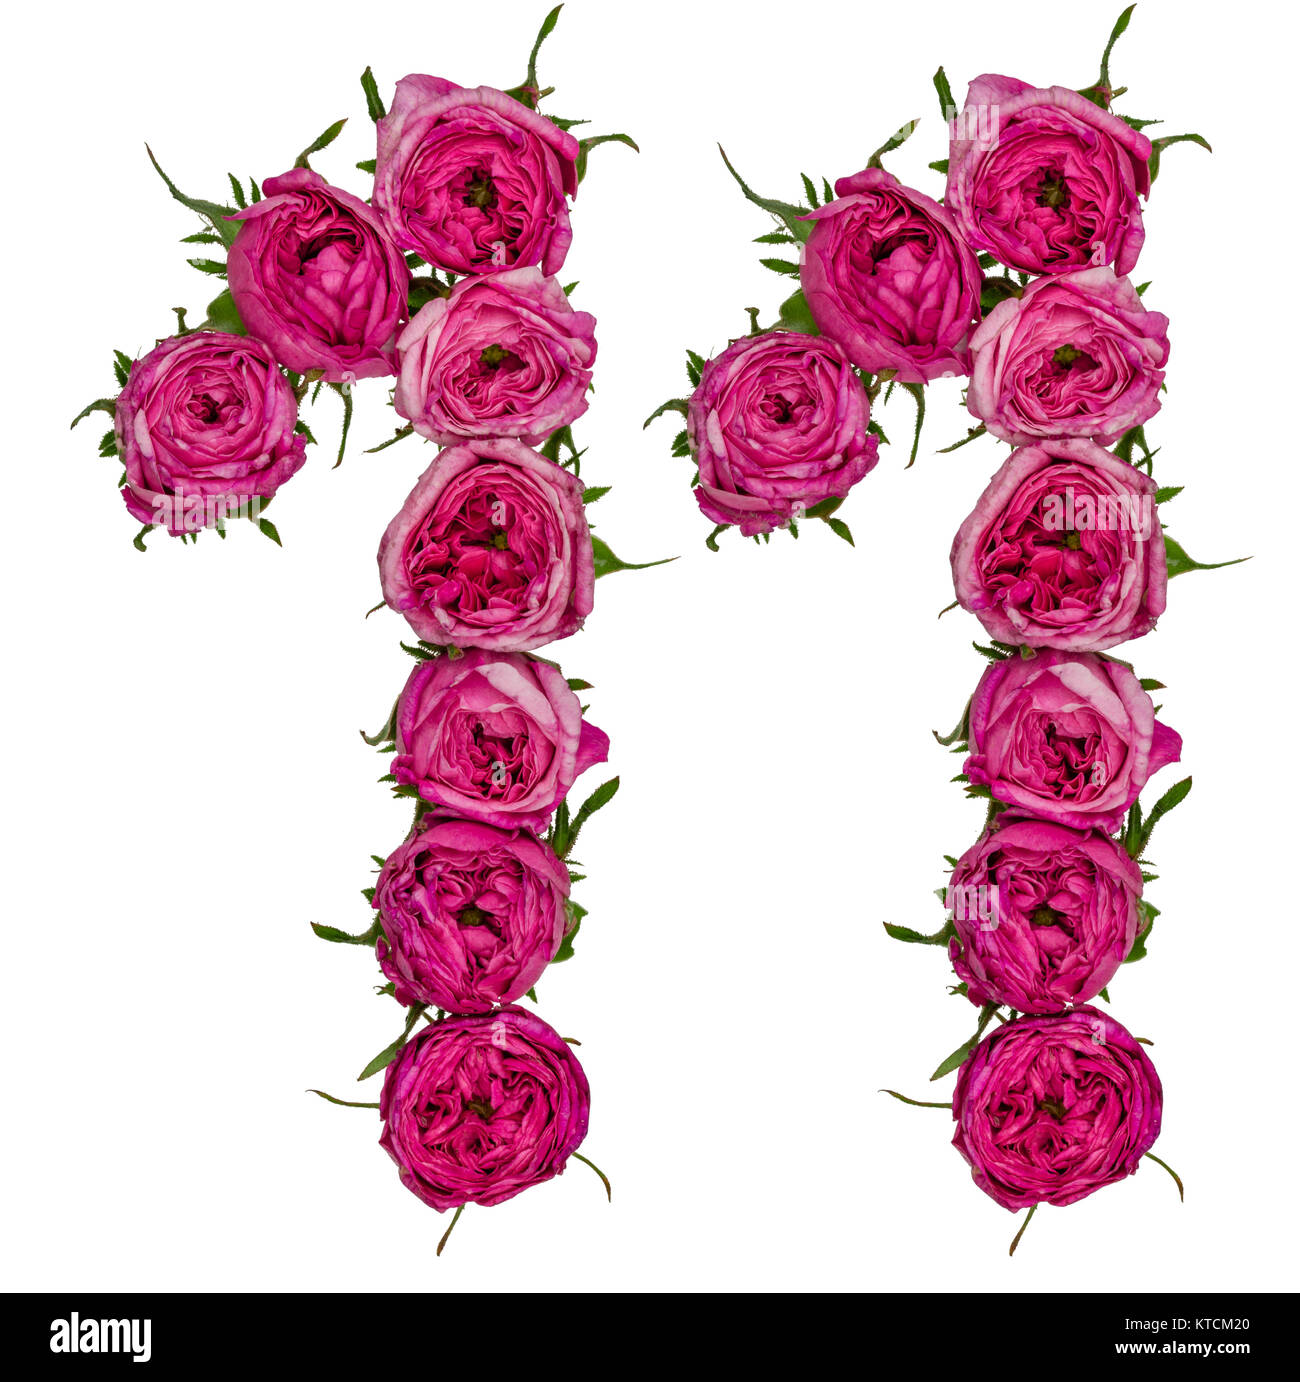 Numero arabo 11, undici, dal rosso dei fiori di rosa, isolato su sfondo bianco Foto Stock